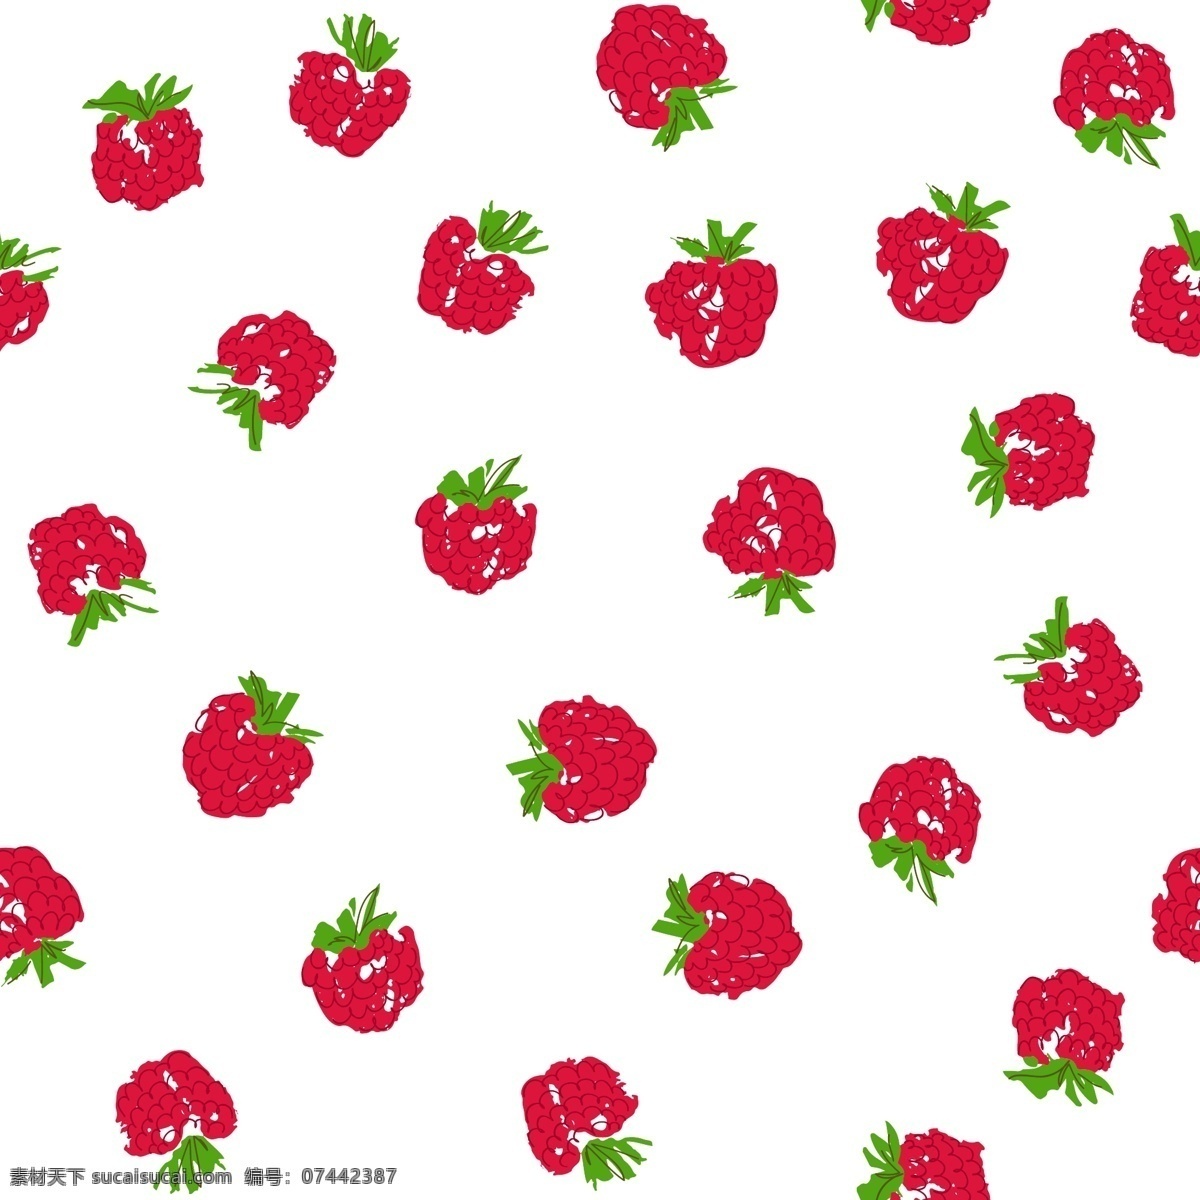 清新 甜美 水果 壁纸 图案 水果图案 壁纸图案 草莓图案 红色图案 清新壁纸